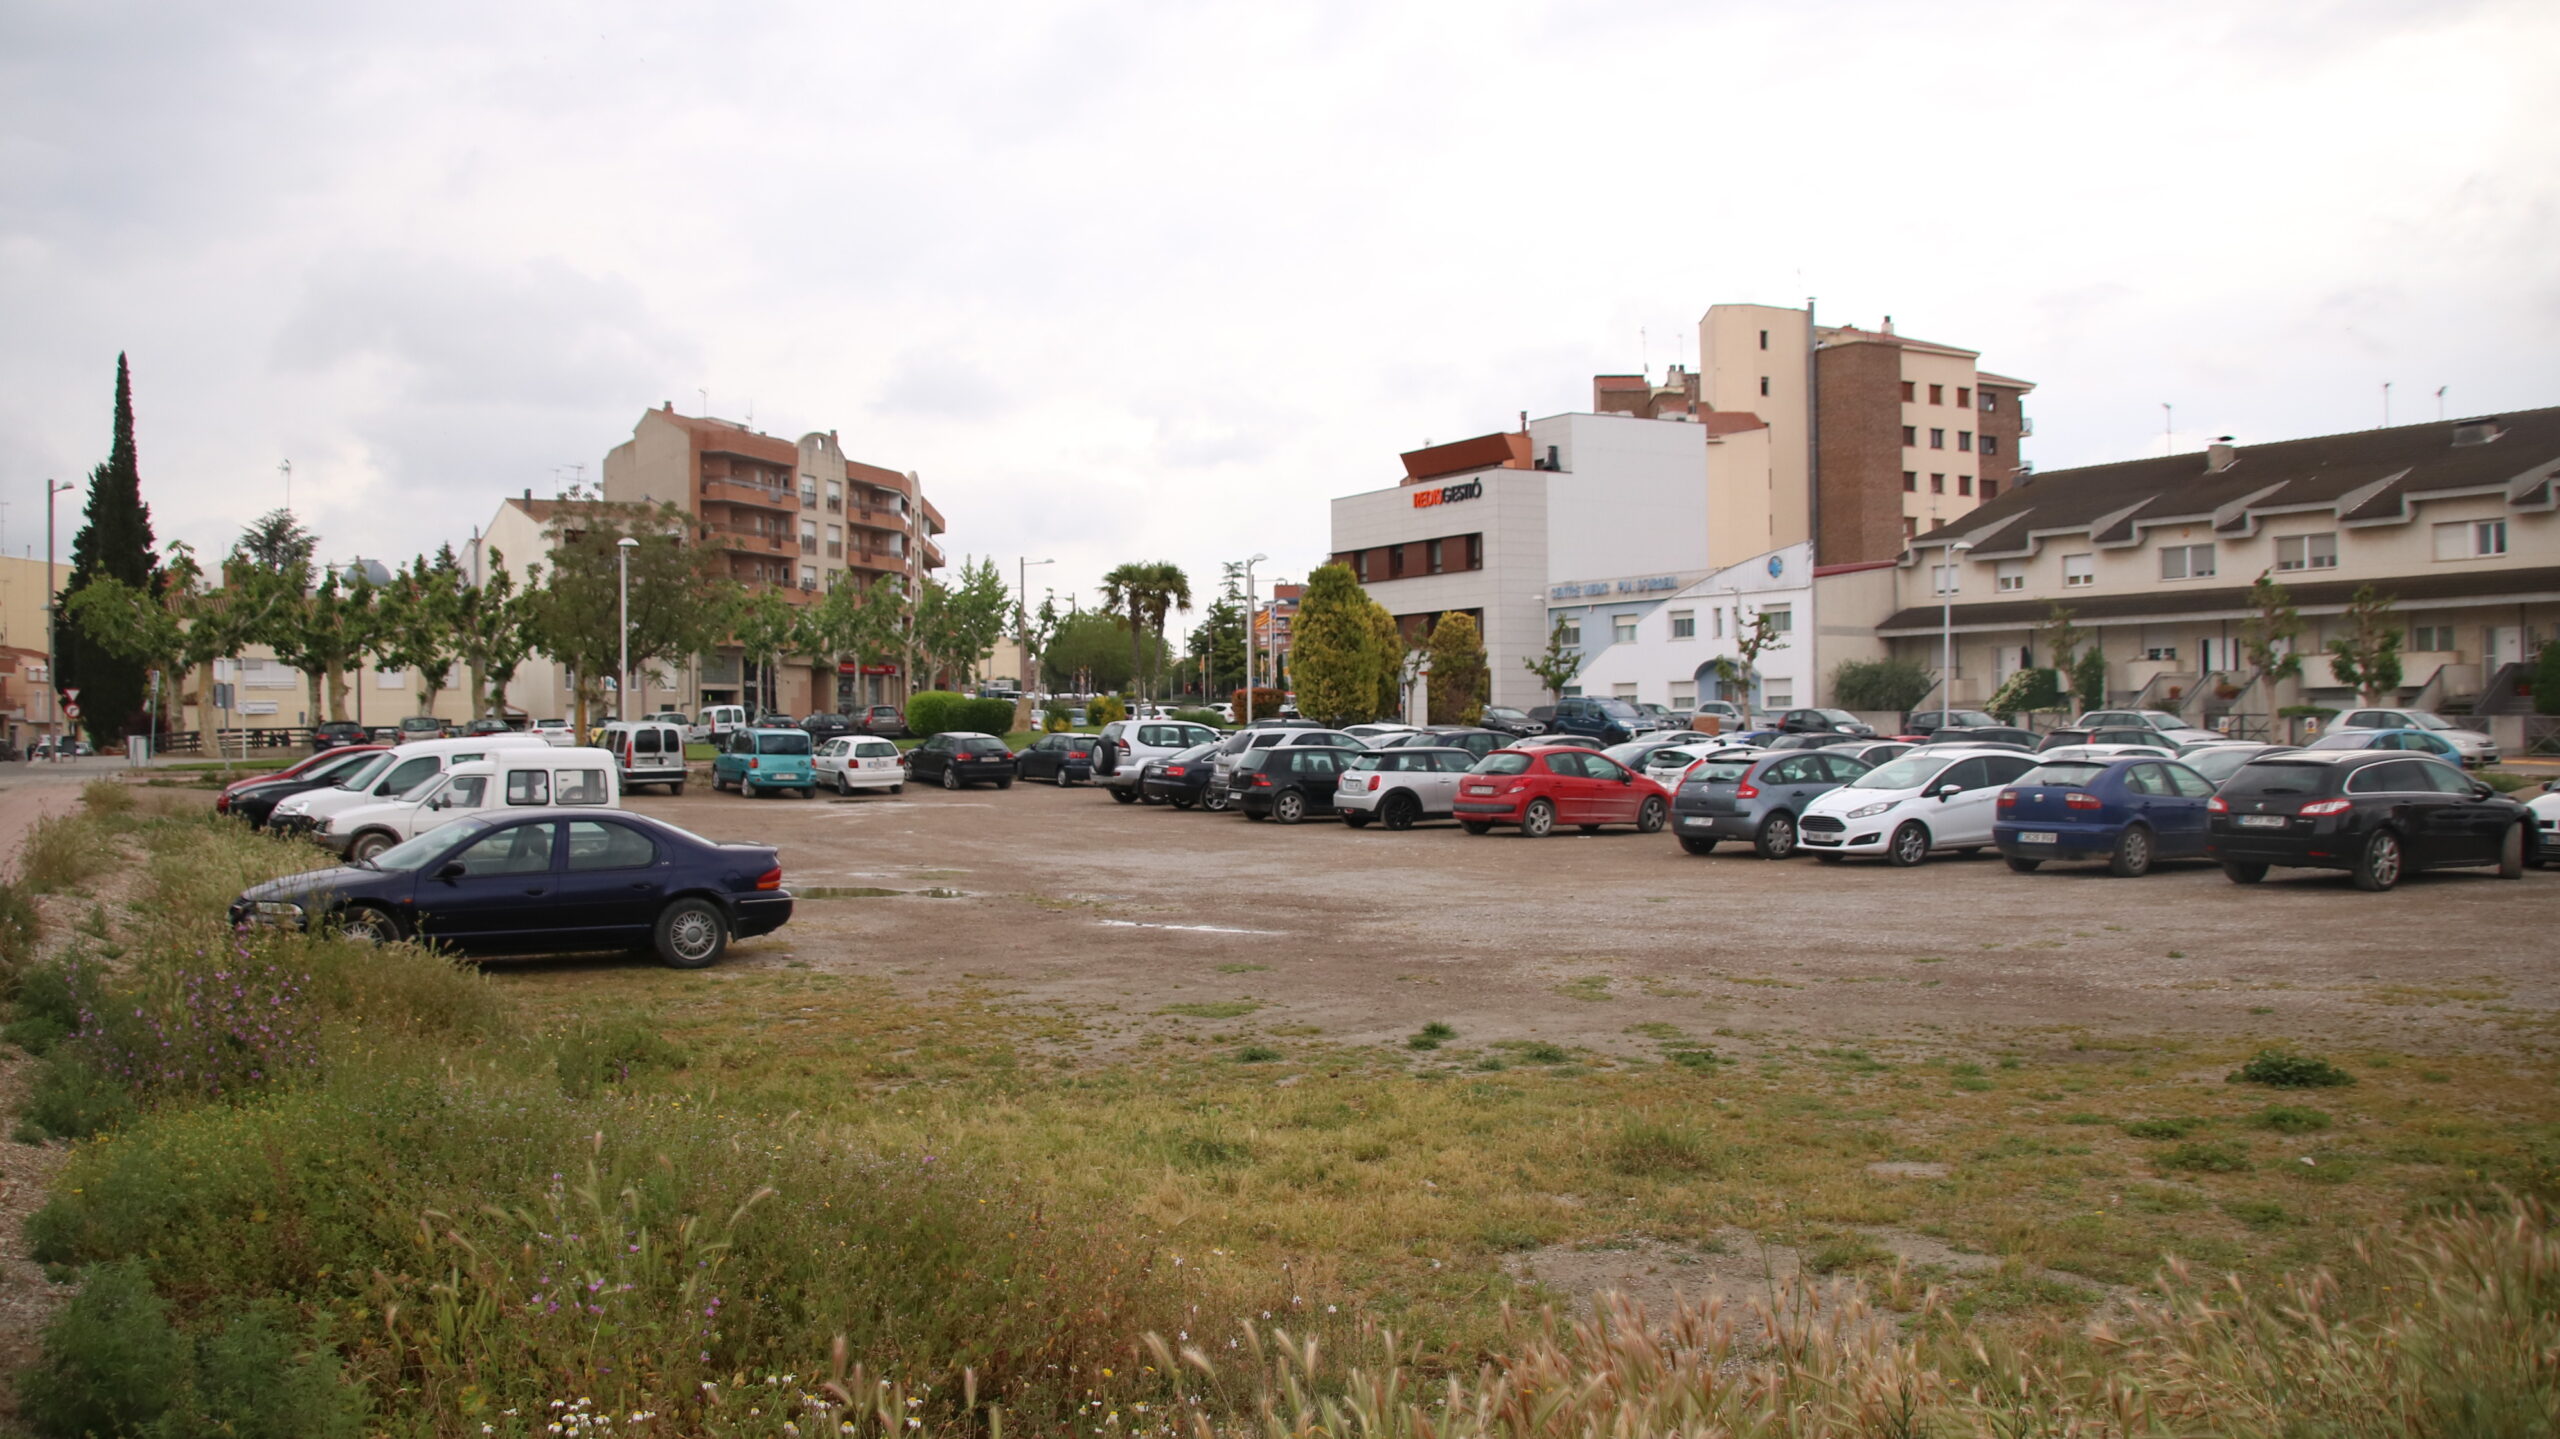 L’Ajuntament de Mollerussa adjudica el condicionament de quatre zones d’aparcament públic per millorar-ne el ferm